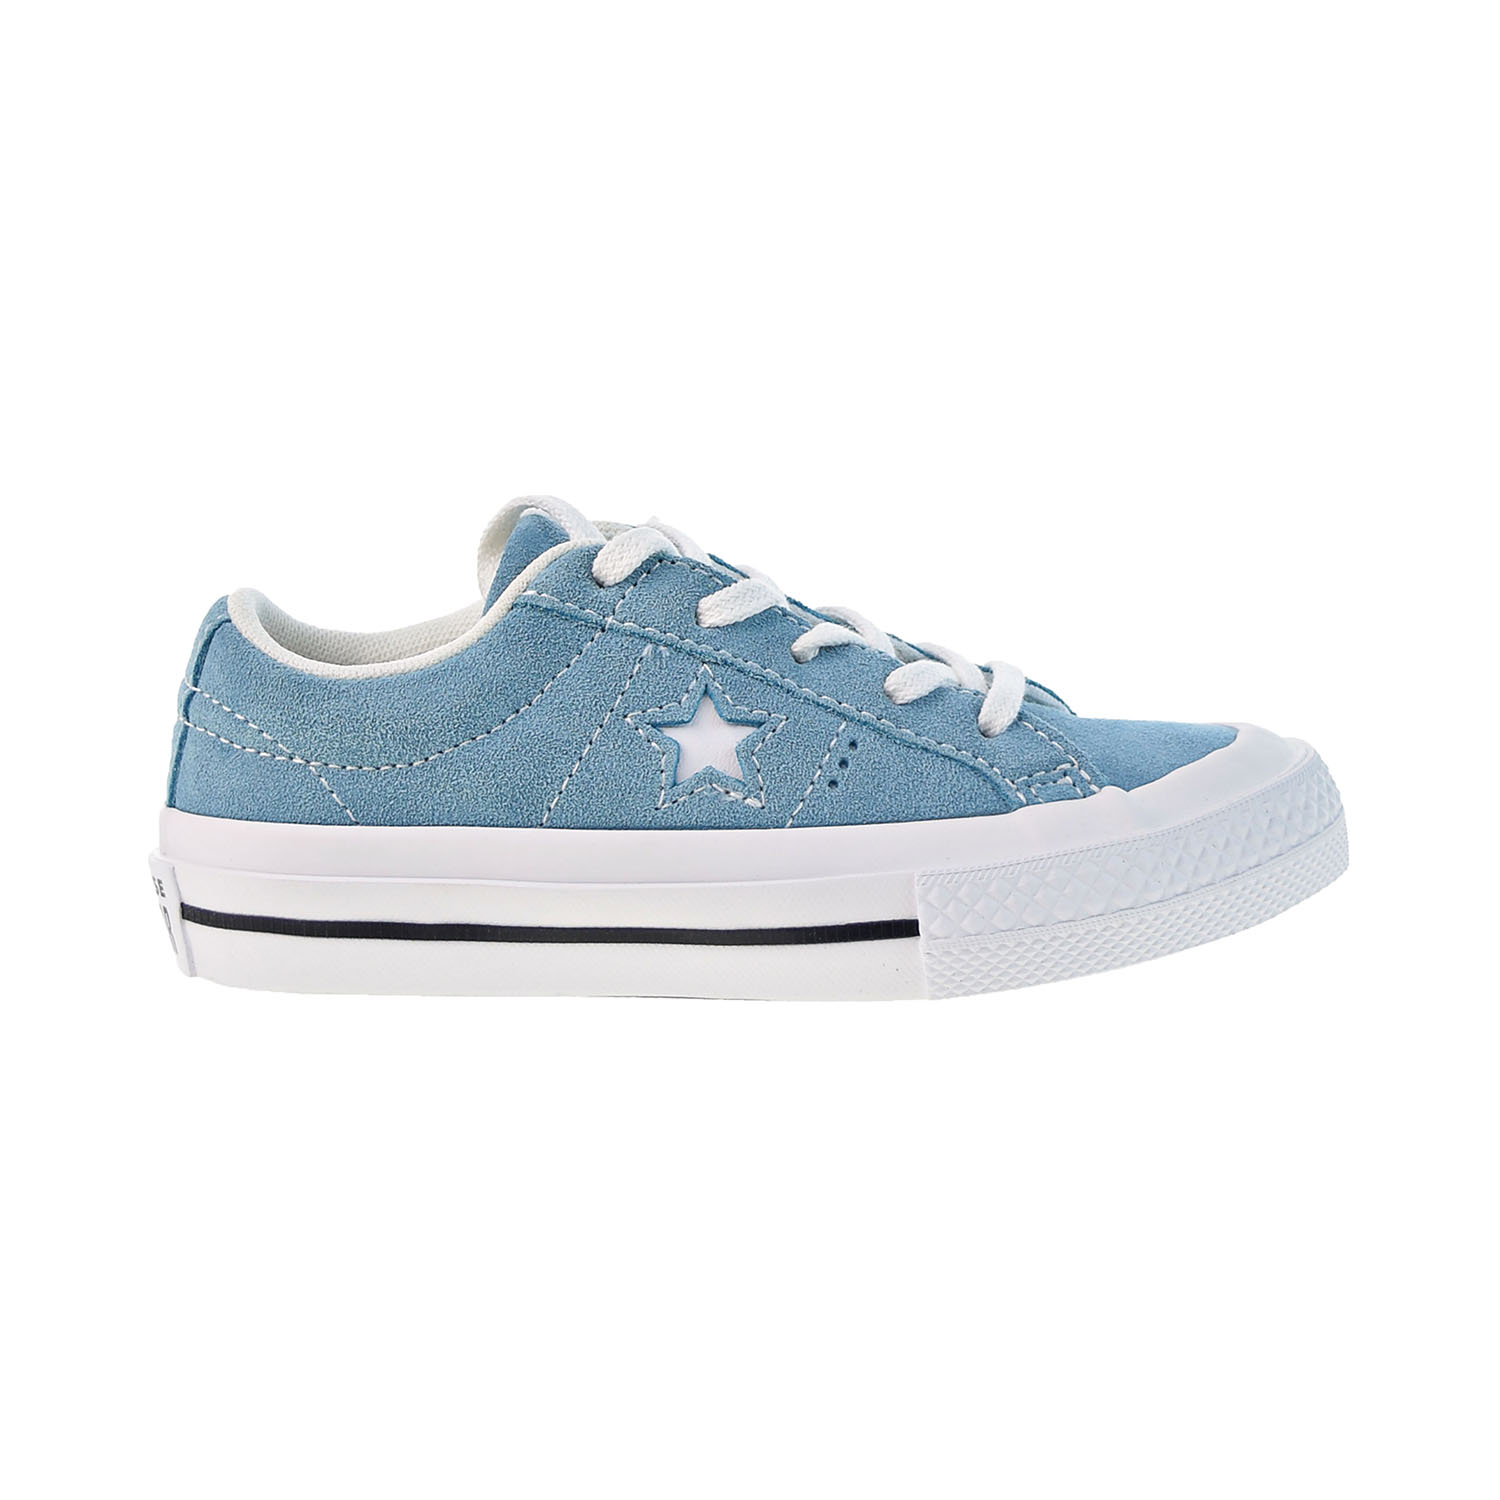 Converse One Star Oxford Little Kids' Shoes Shoreline Blue 361803c